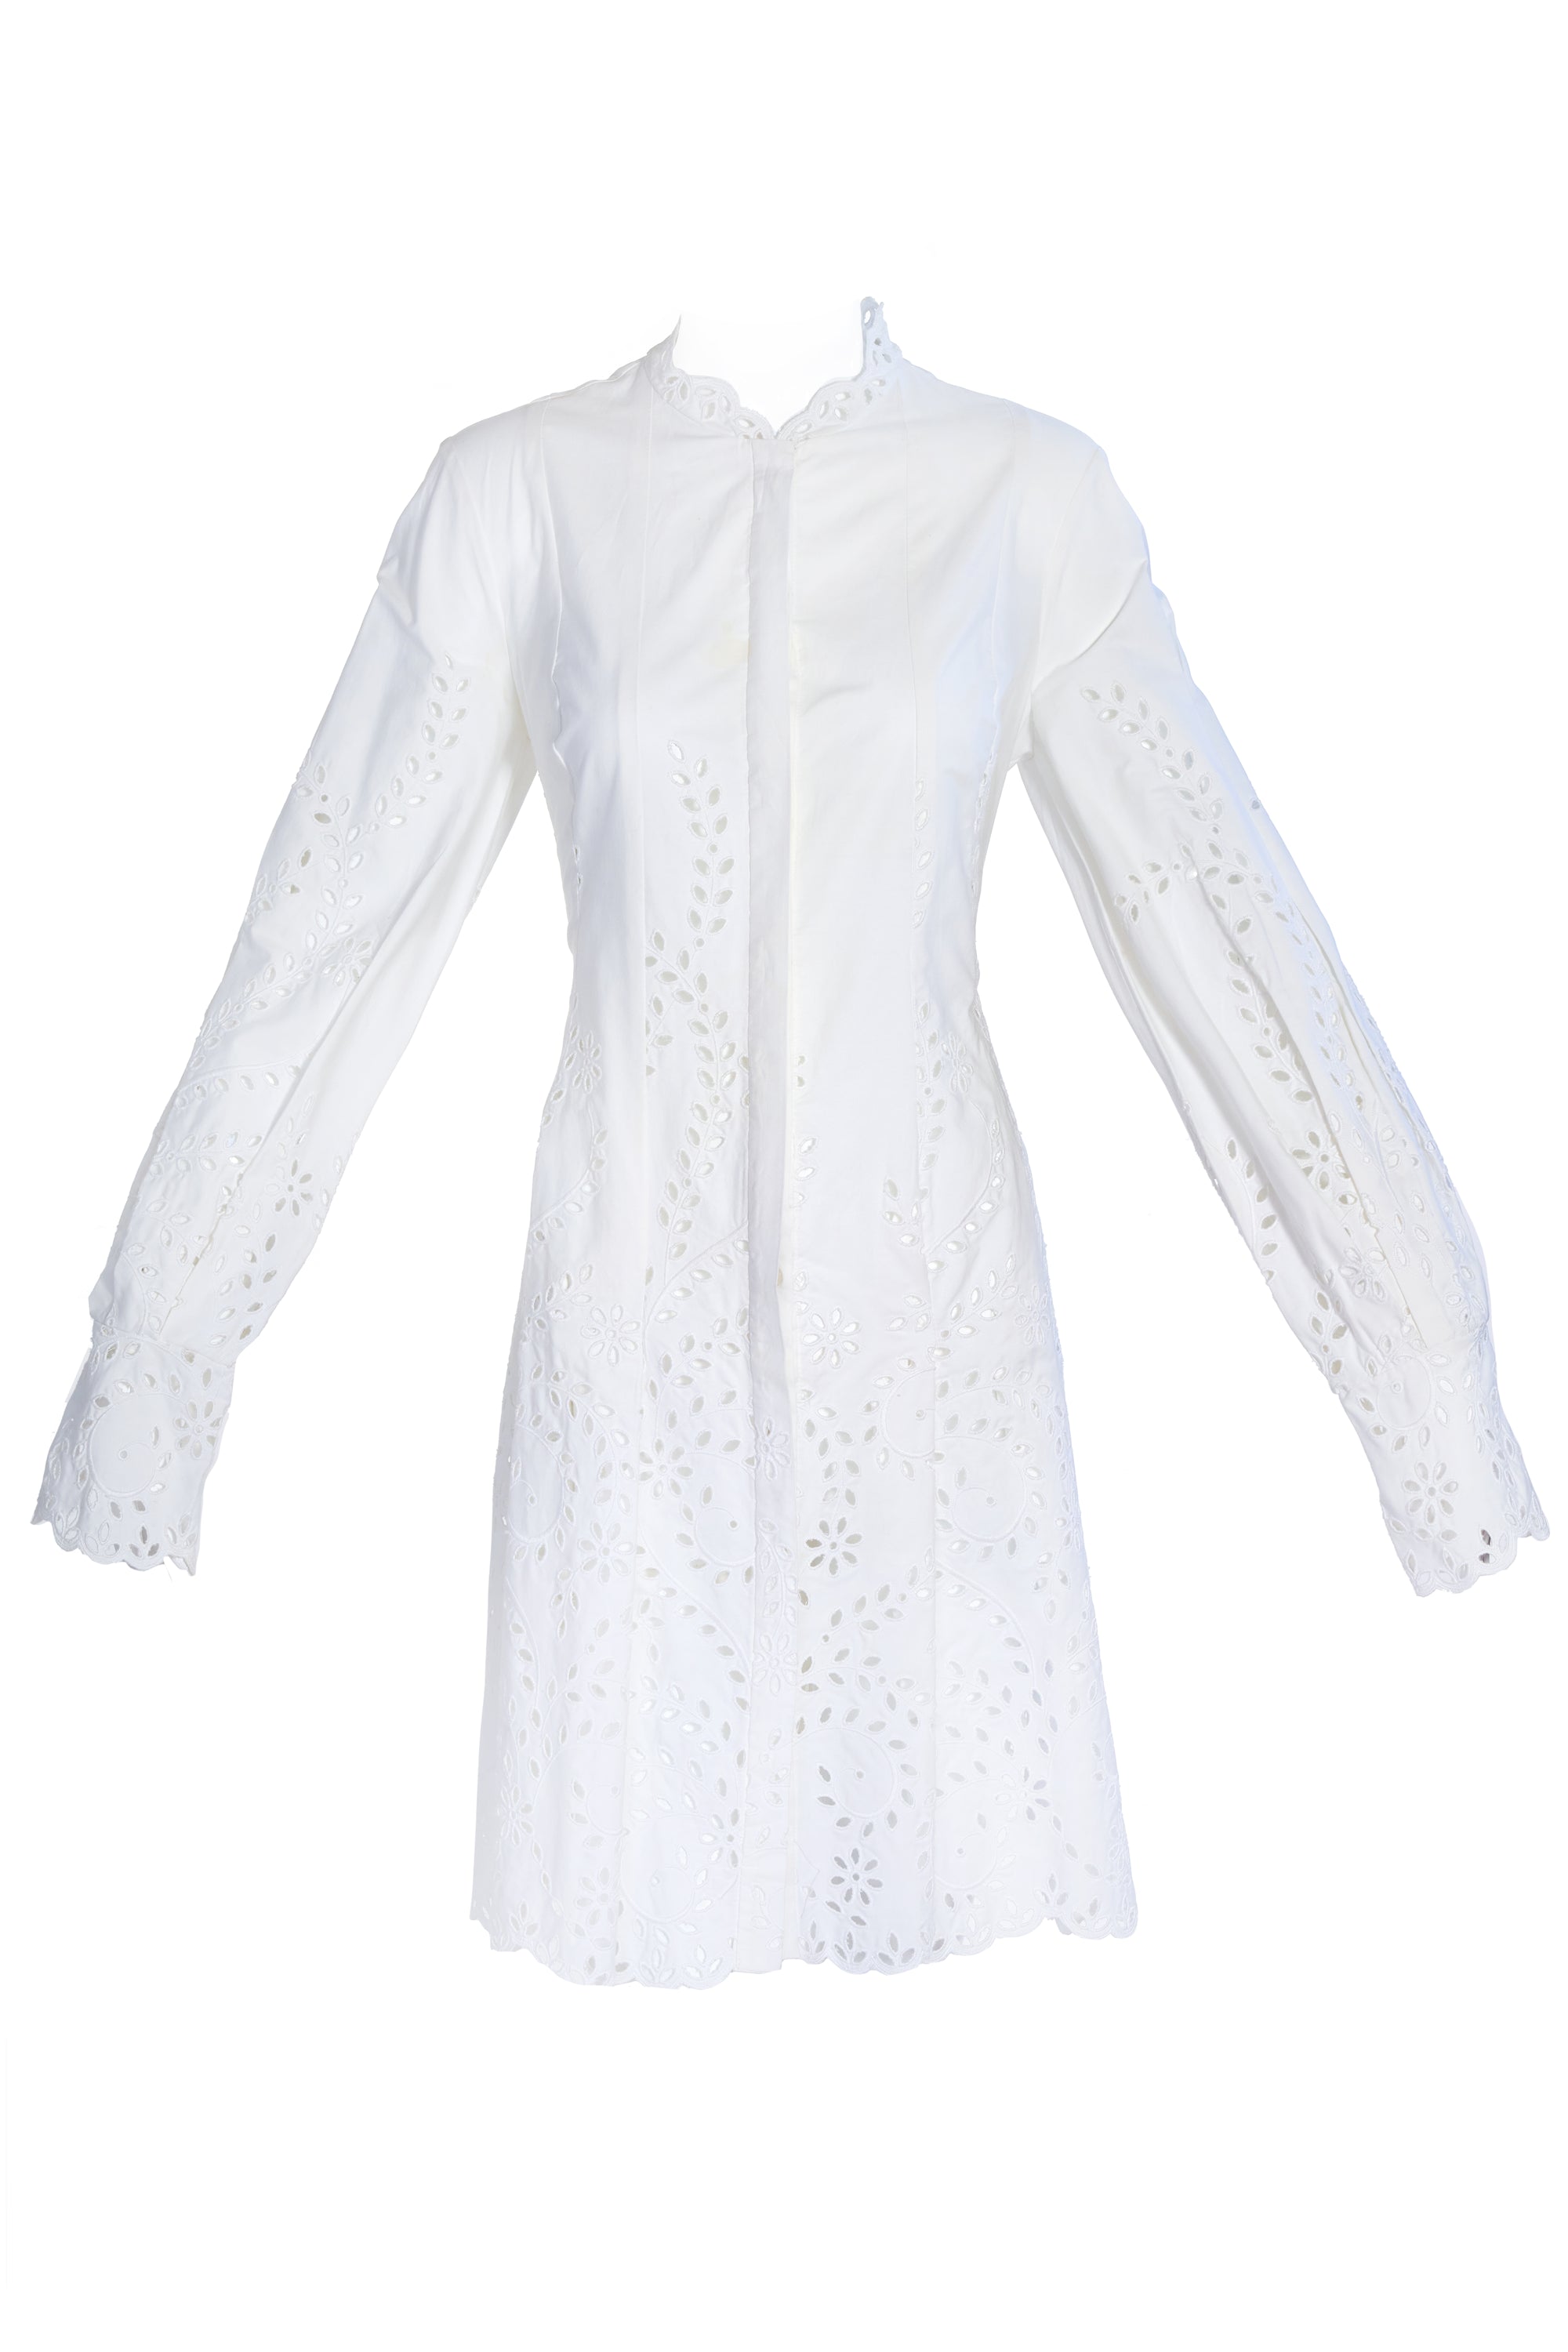 Oscar de La Renta White Cotton Shirt Dress Size 8